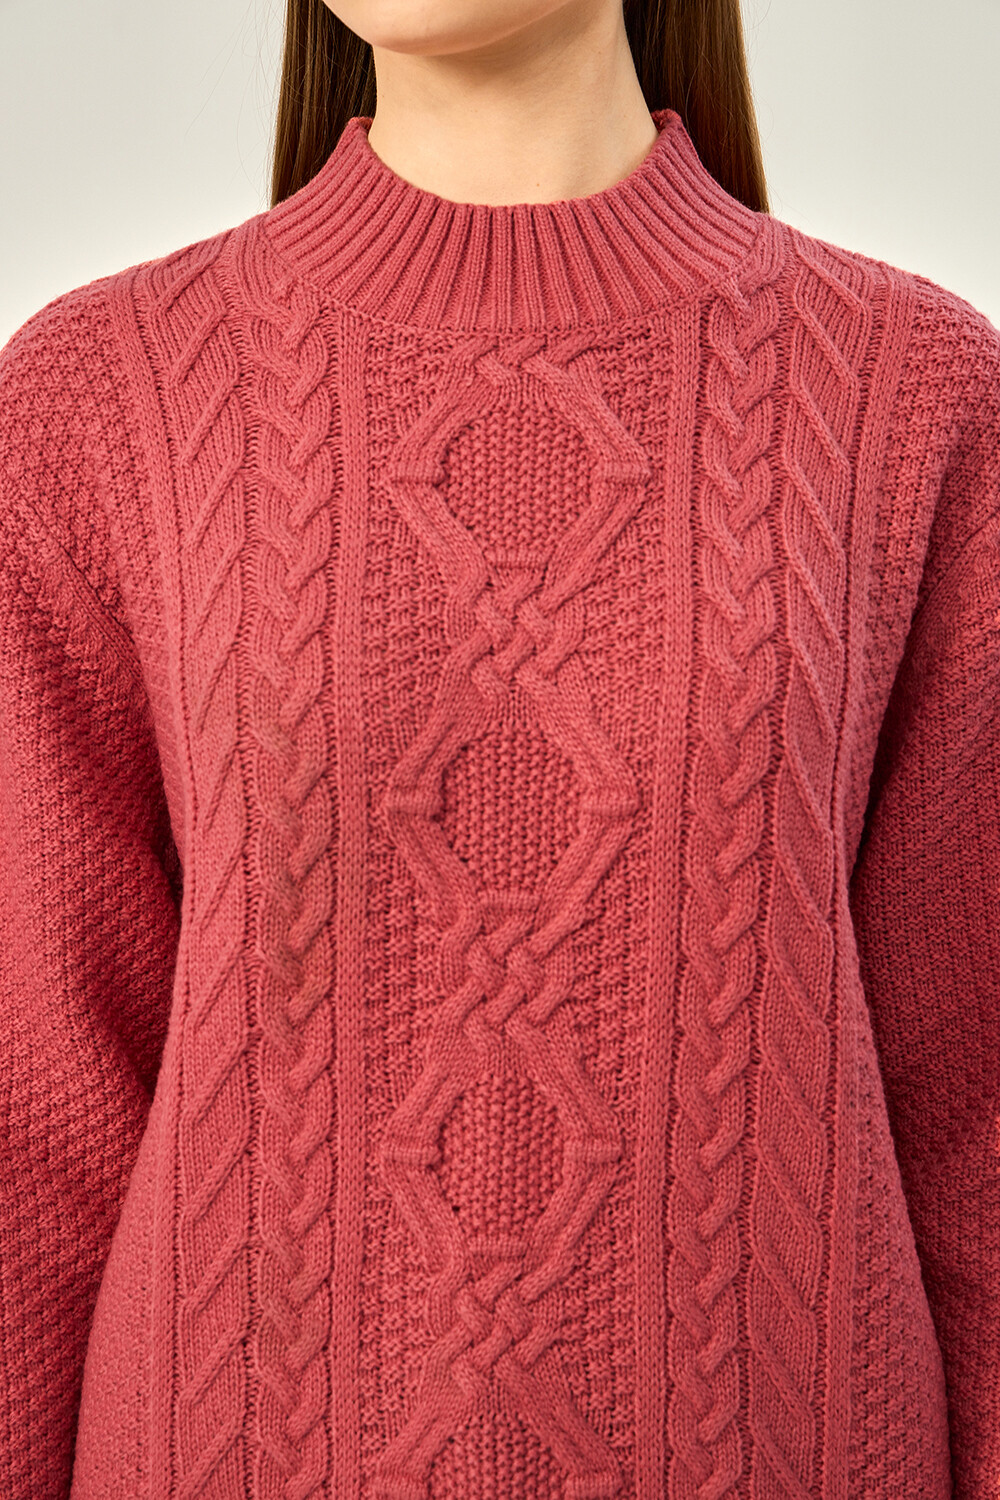 Sweater Aburi Rosa Oscuro